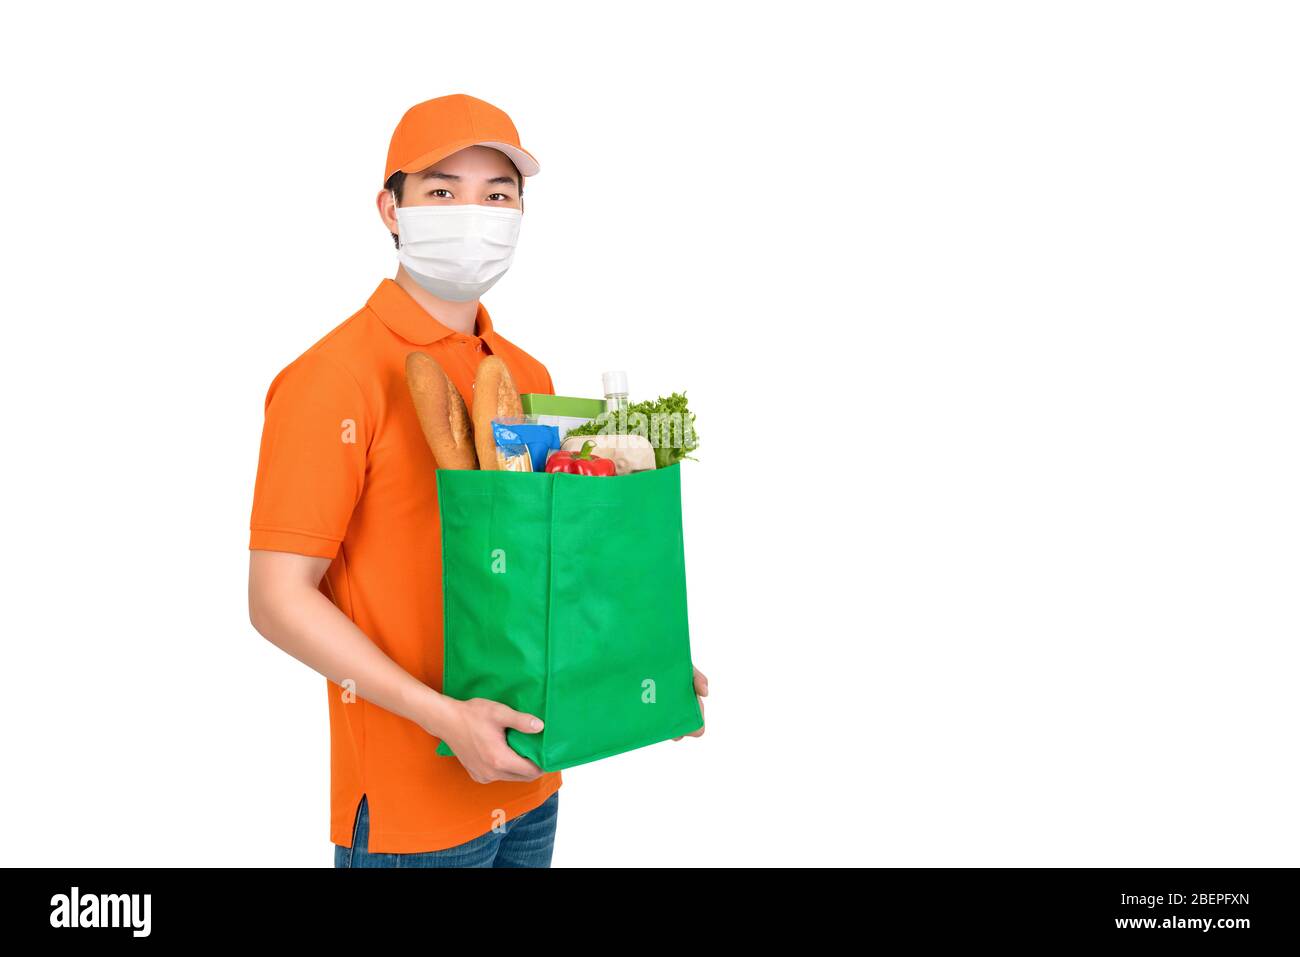 Homme hygiénique portant un masque médical portant un sac de shopping pour supermarché offrant un service de livraison à domicile isolé sur fond blanc Banque D'Images